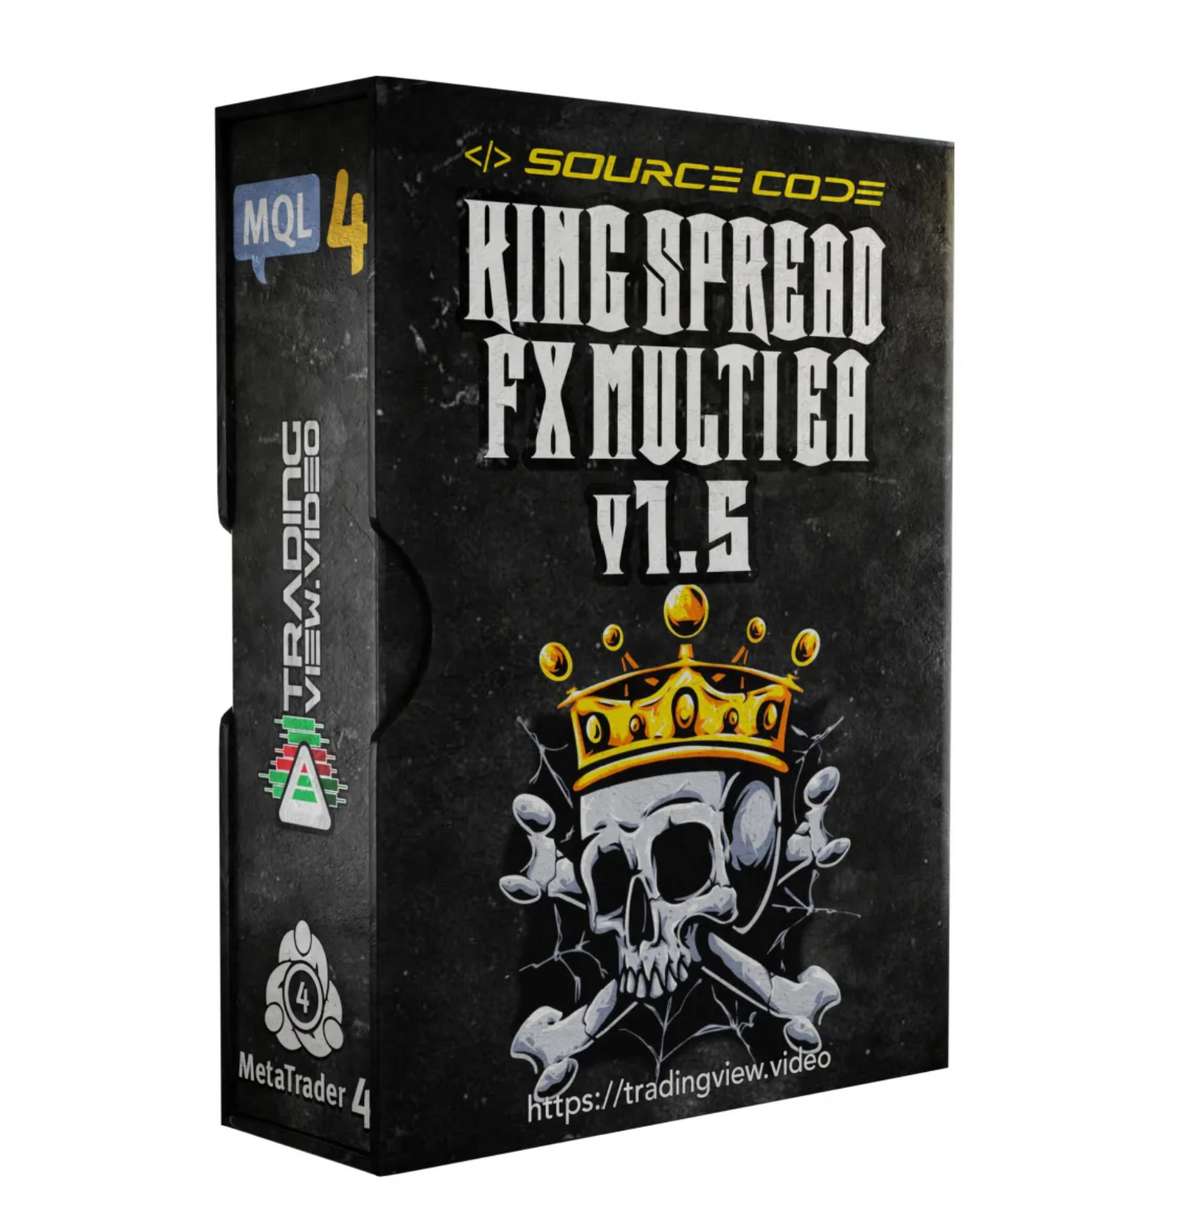 KING SPREAD FX MULTI v1.5 [SOURCE CODE]